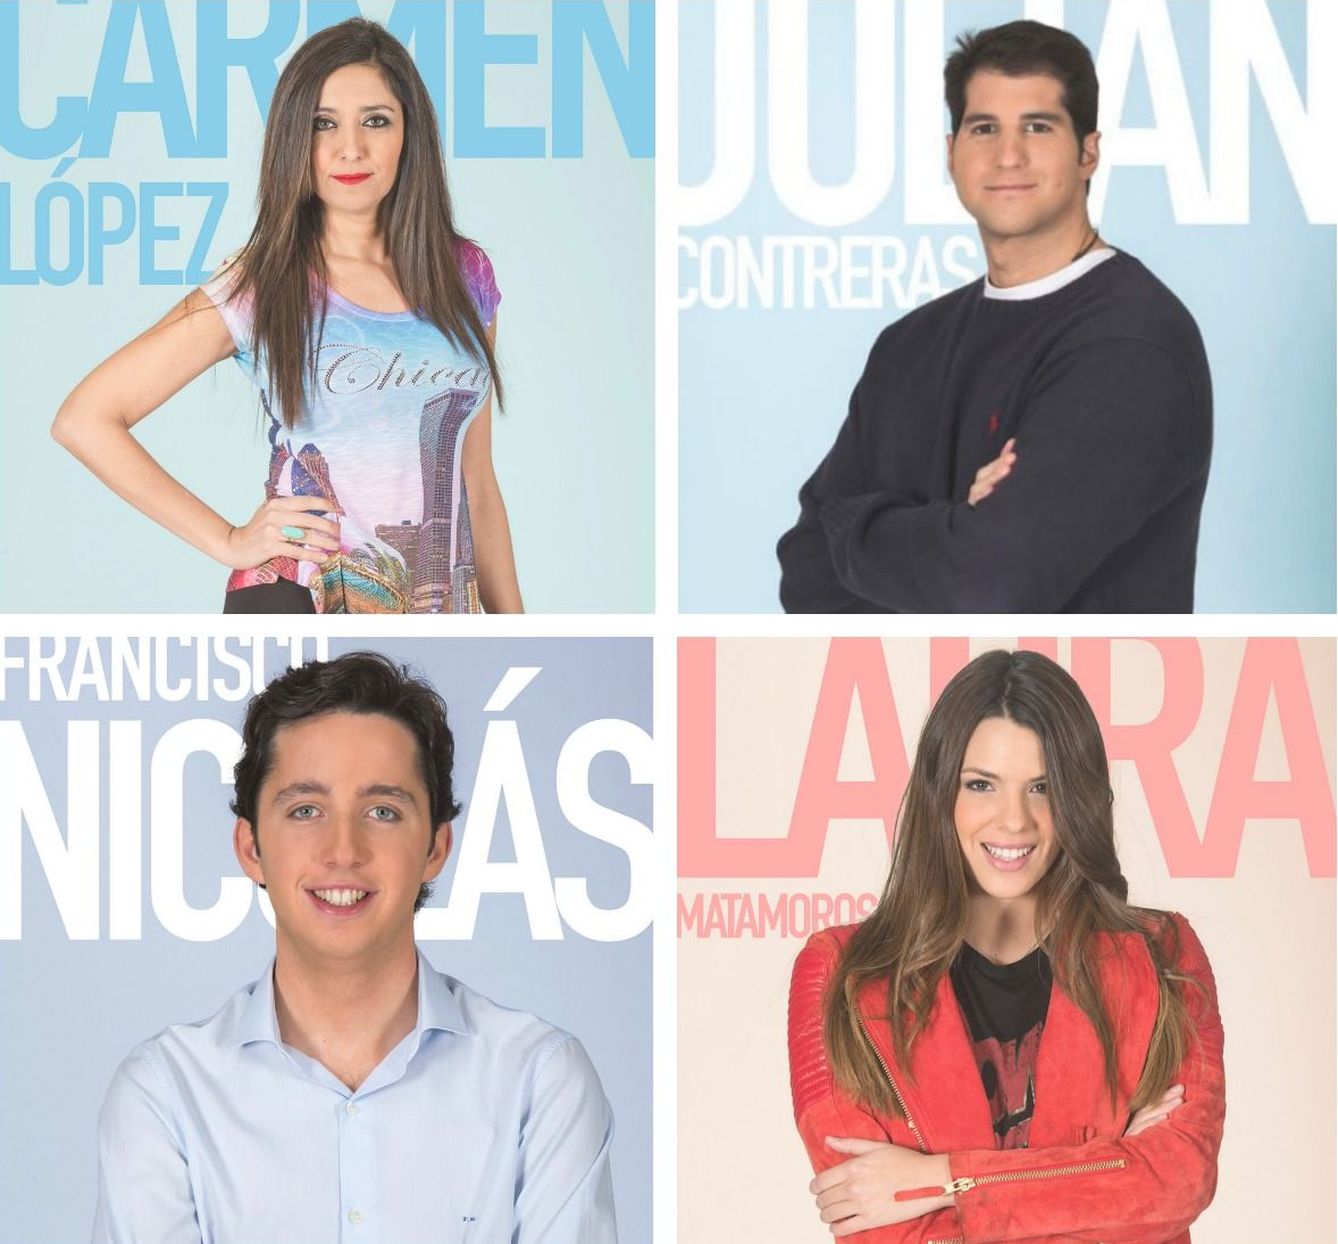 Nominados: Carmen López, Julián Contreras, el 'Pequeño Nicolás' y Laura Matamoros.